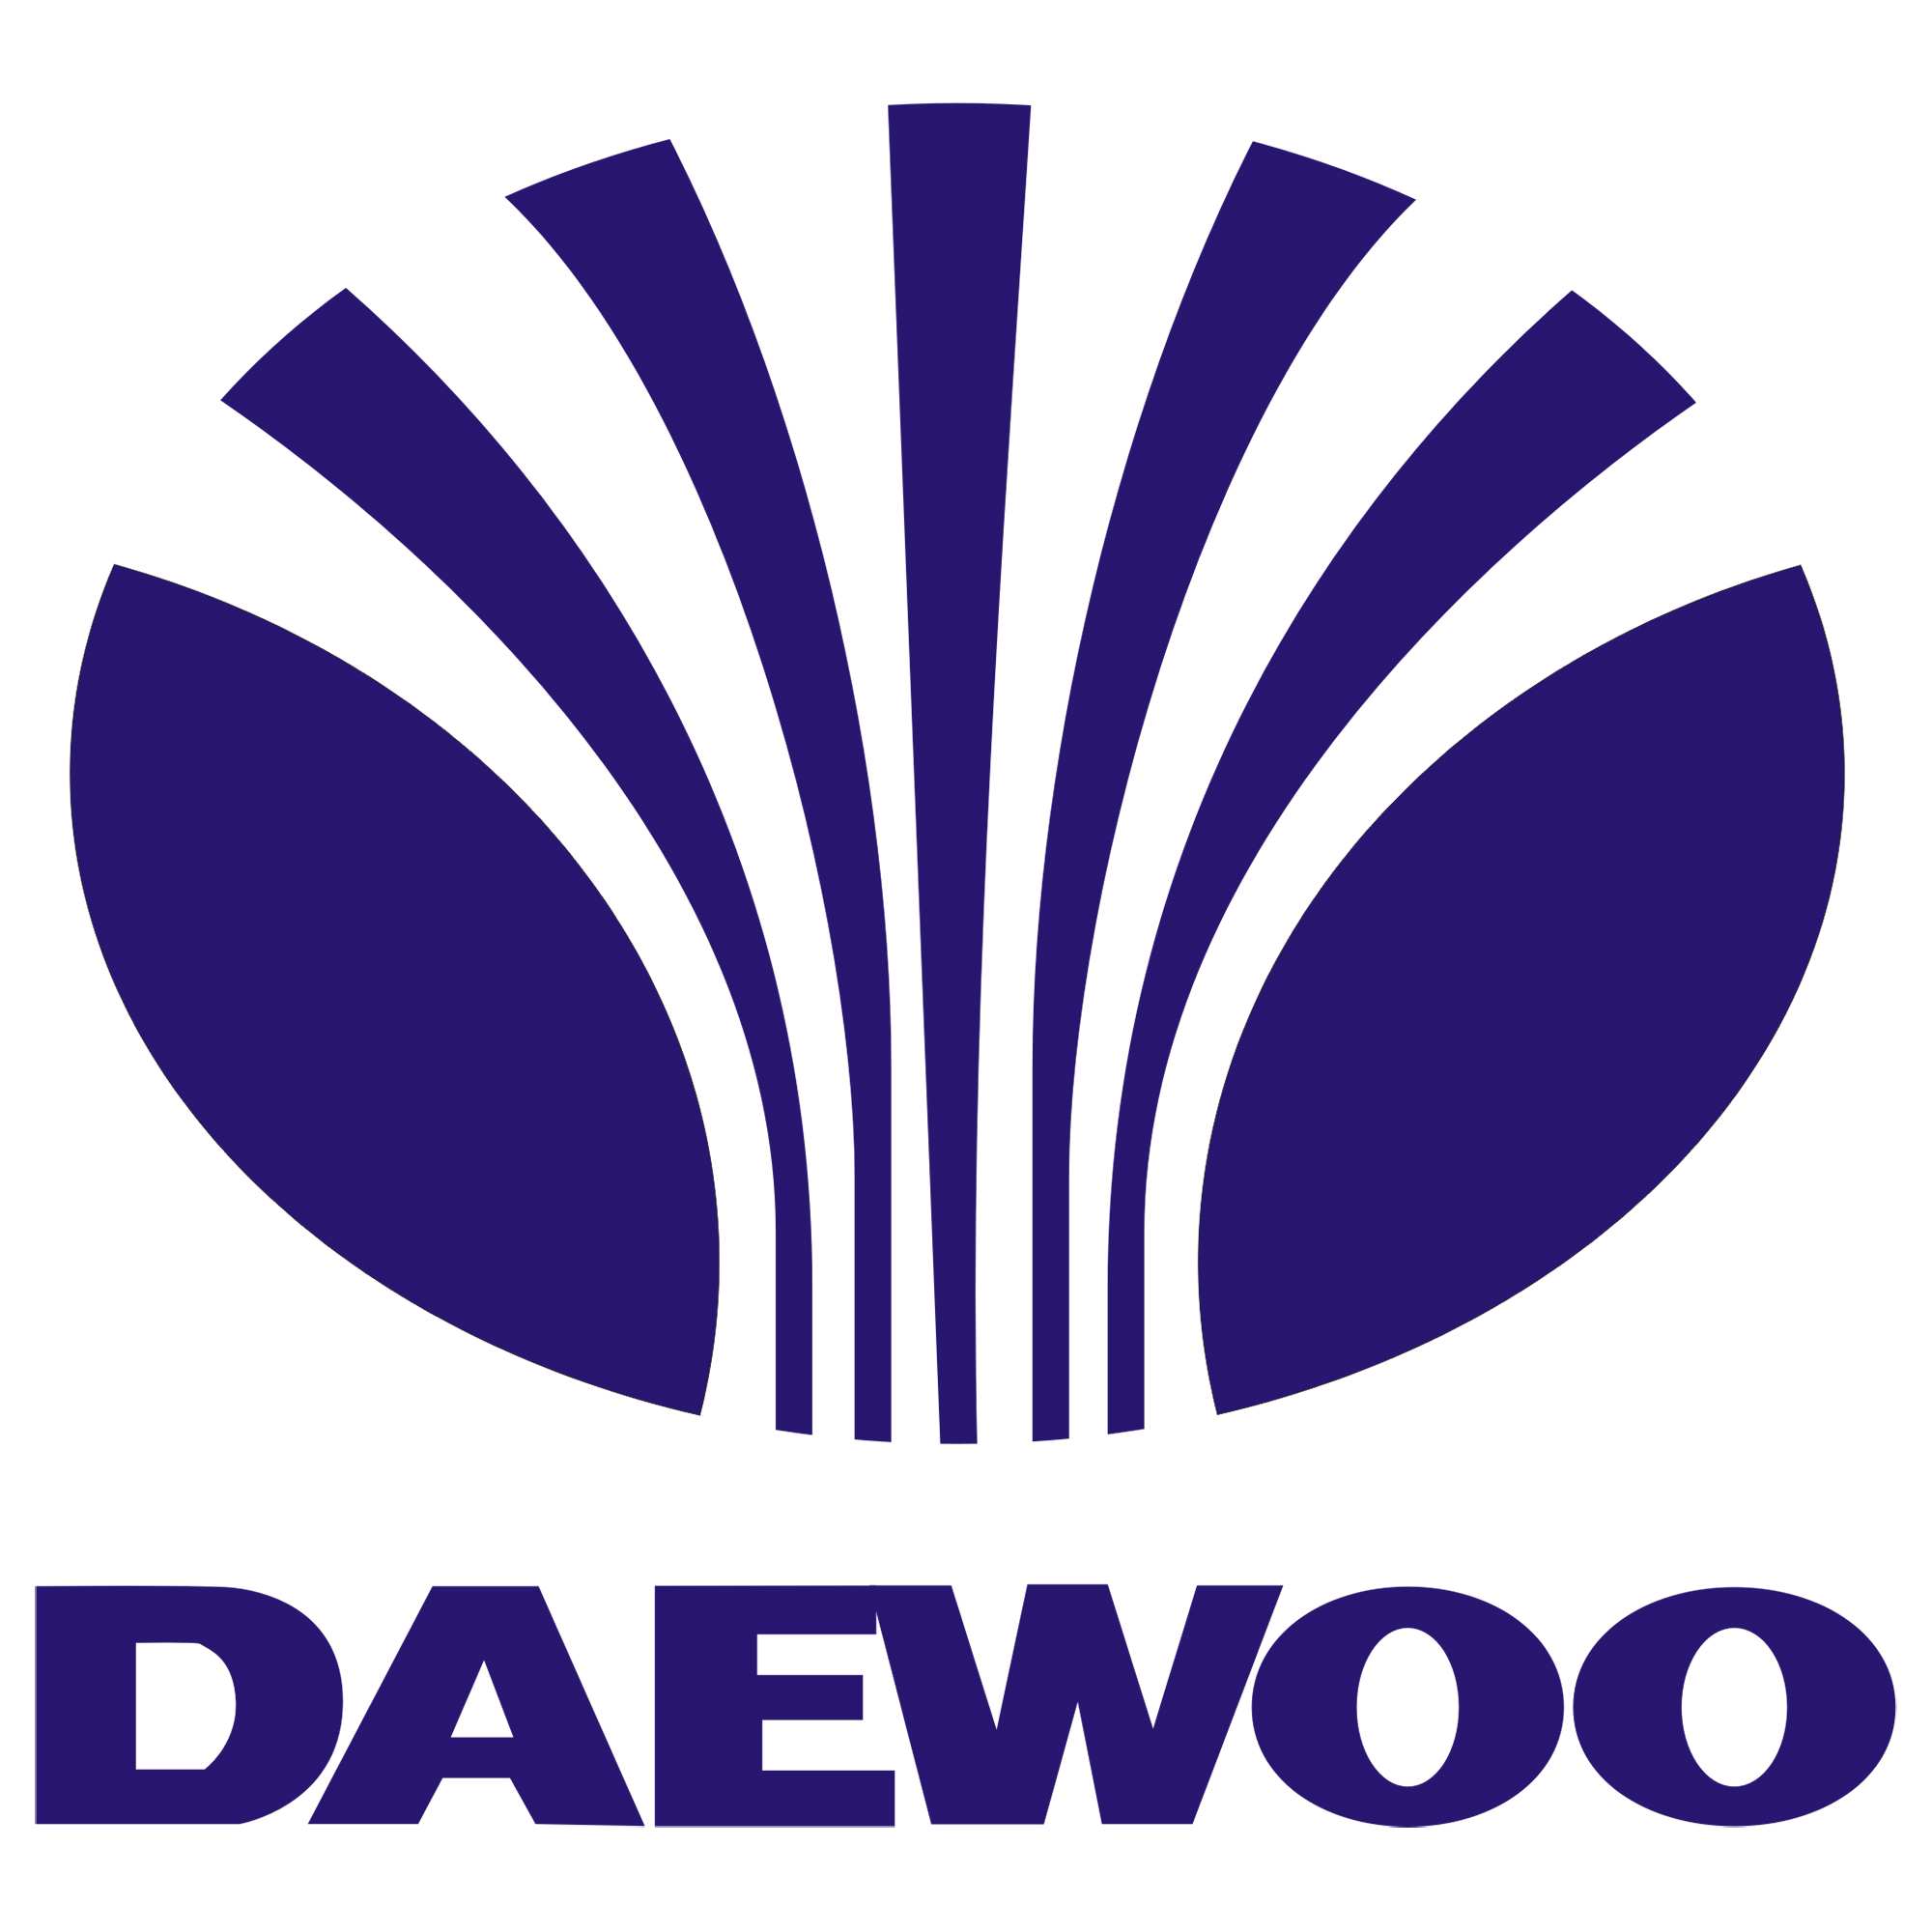 Daewoo 3010924600 Refrigerator Screw Cap Genuine Original Equipment Manufacturer (OEM) Part